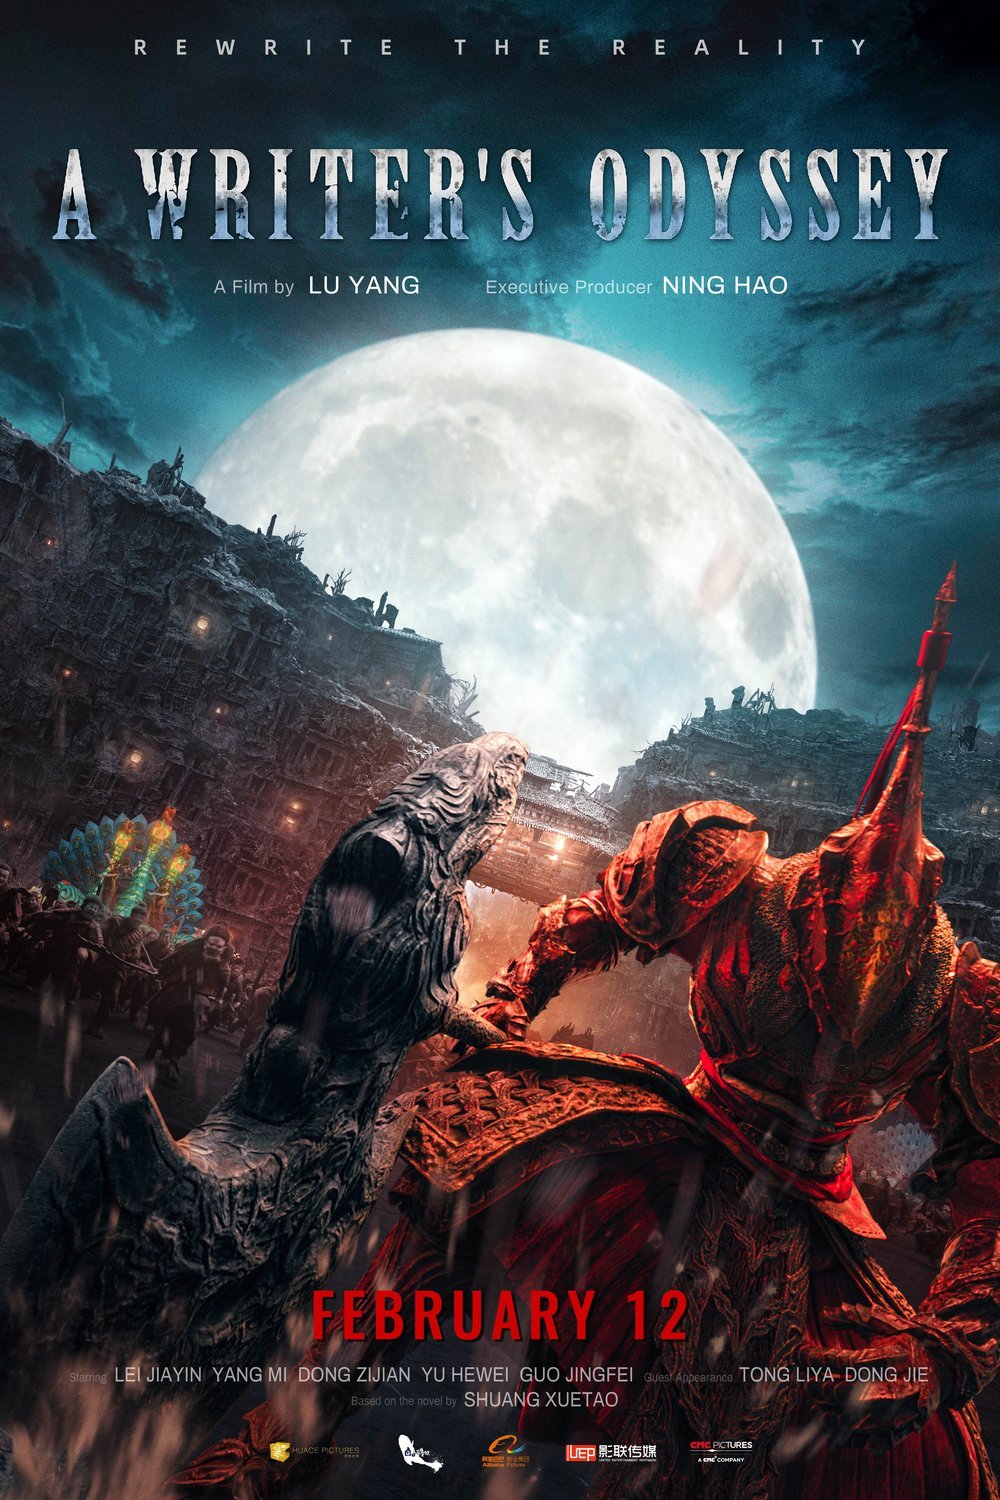 Mandarin poster of the movie Ci Sha Xiao Shuo Jia